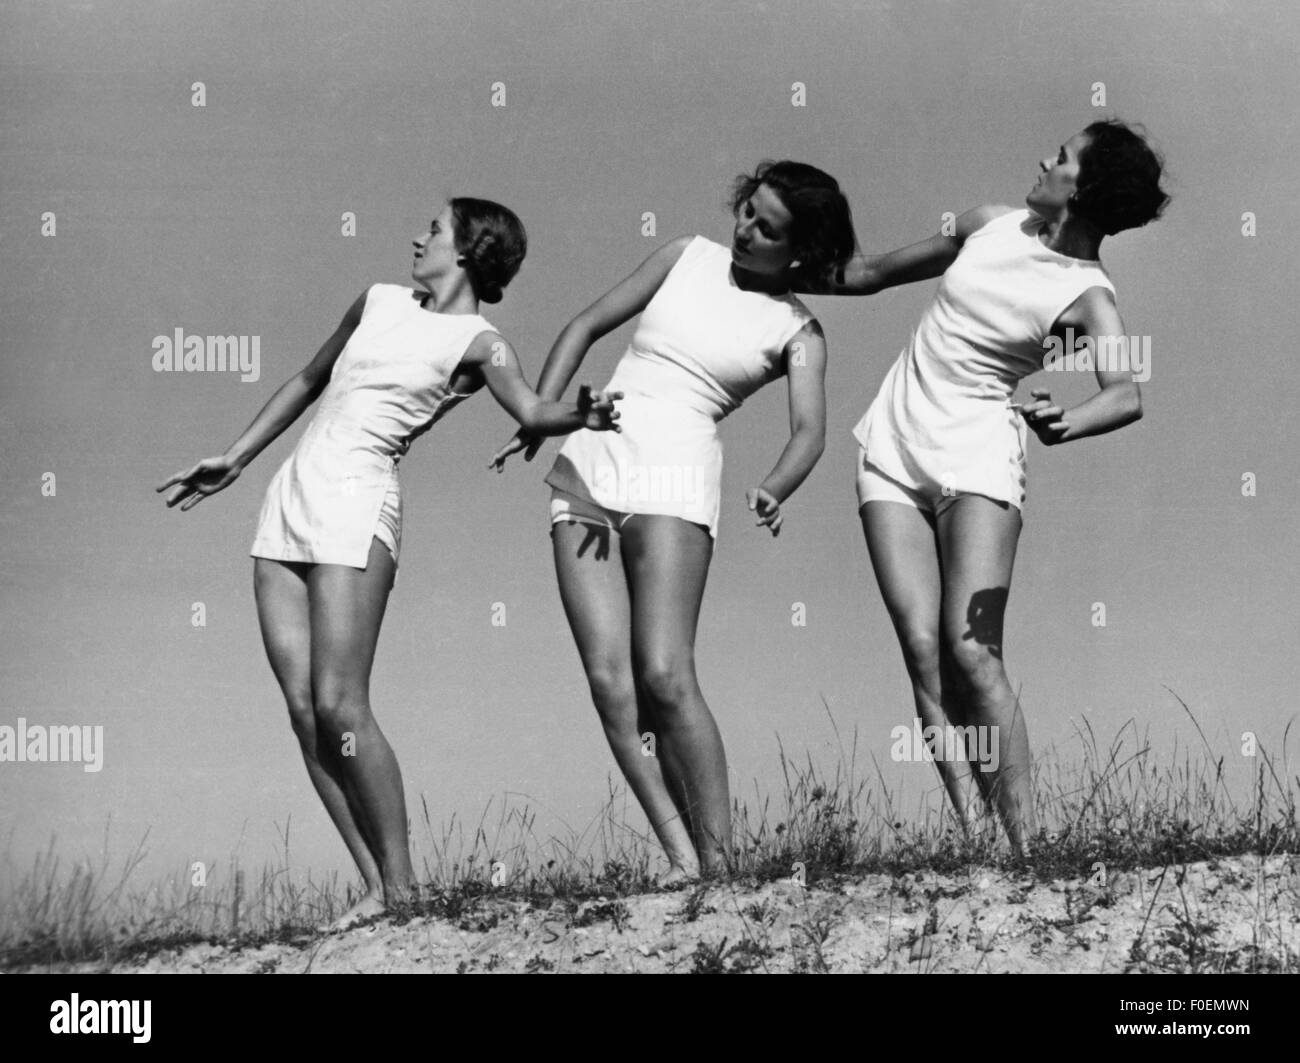 Sports, gymnastique, trois femmes faisant des exercices de gymnastique, école Laban, 1940, droits additionnels-Clearences-non disponible Banque D'Images